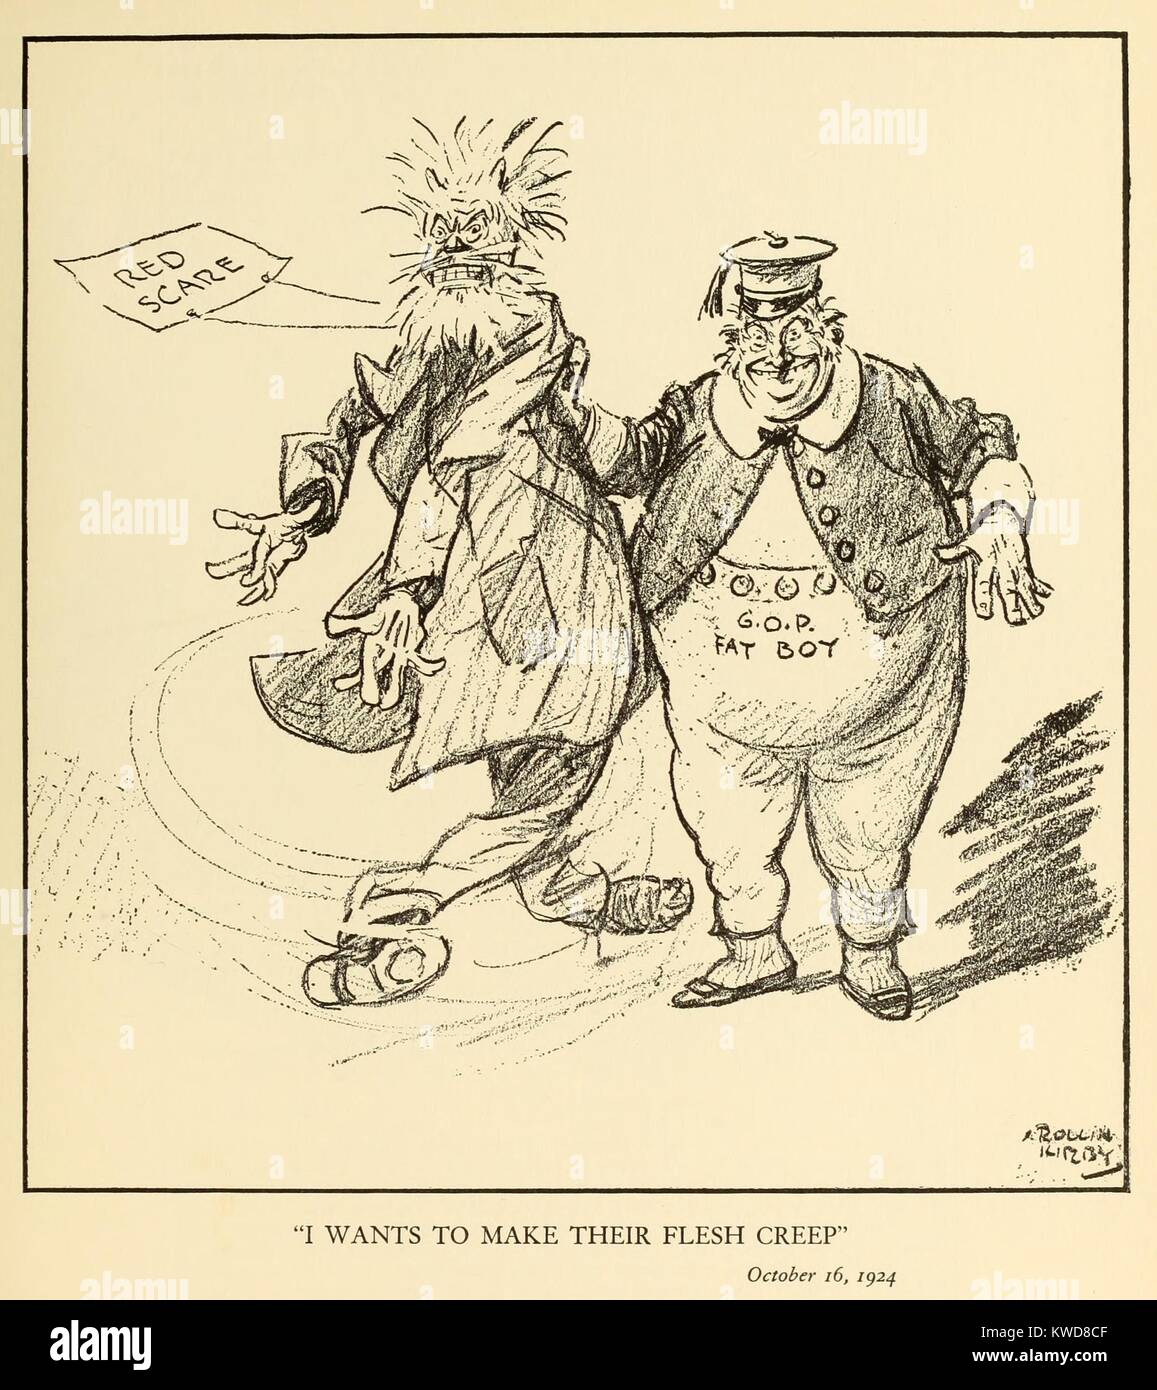 Ich möchte Ihre GÄNSEHAUT ZU MACHEN. Politische Karikatur zeigt einen 'G.O.P. Fatboy" winkt eine bedrohliche Marionette, die den roten Schrecken. Von New York World Karikaturist, Kirby Rollin, Okt. 24, 1920. (BSLOC 2015 17 242) Stockfoto